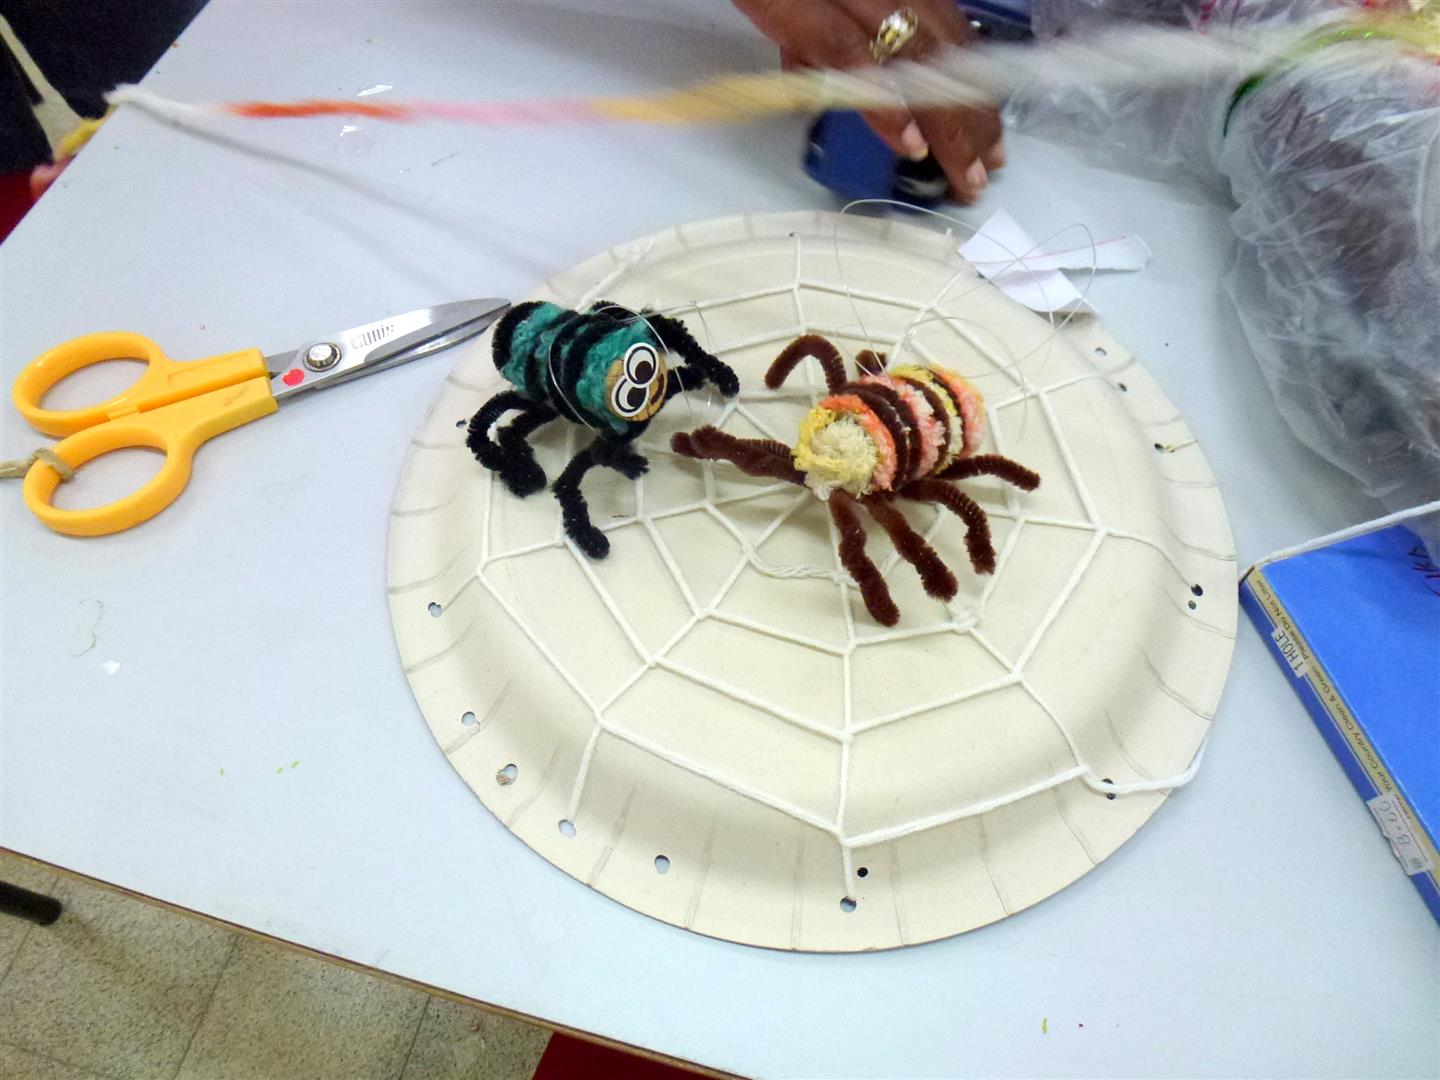 הדרכה על חיי העכבישים באמצעות יצירה מפסולת